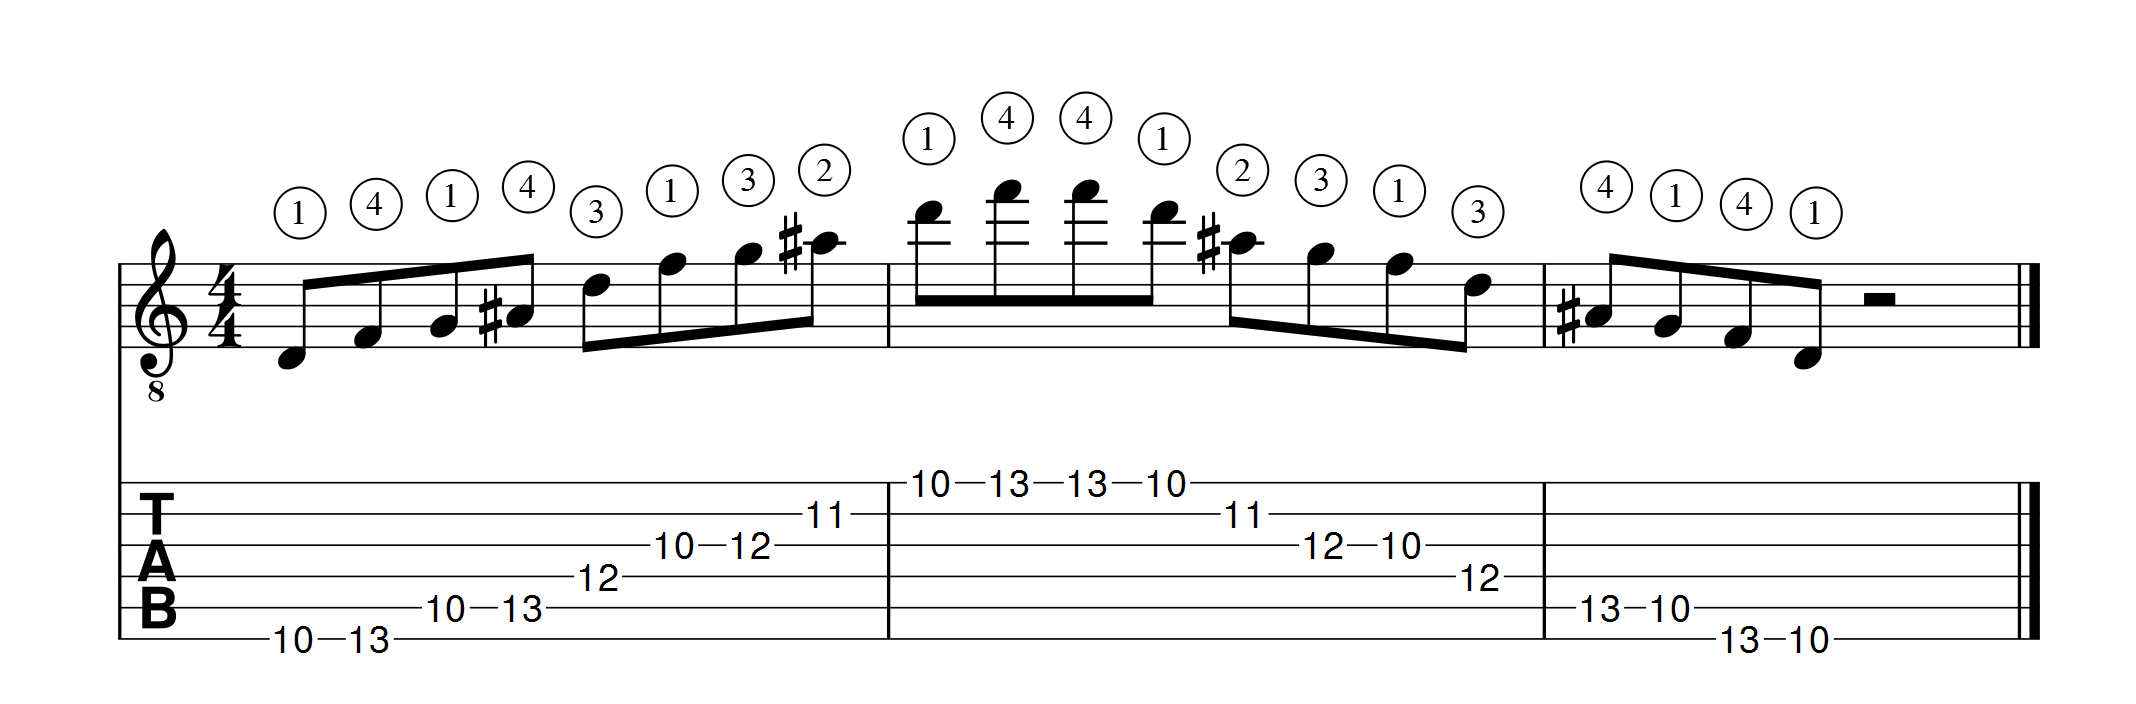 sol mineur 7 position 2 verticale 1 apprendre la guitare